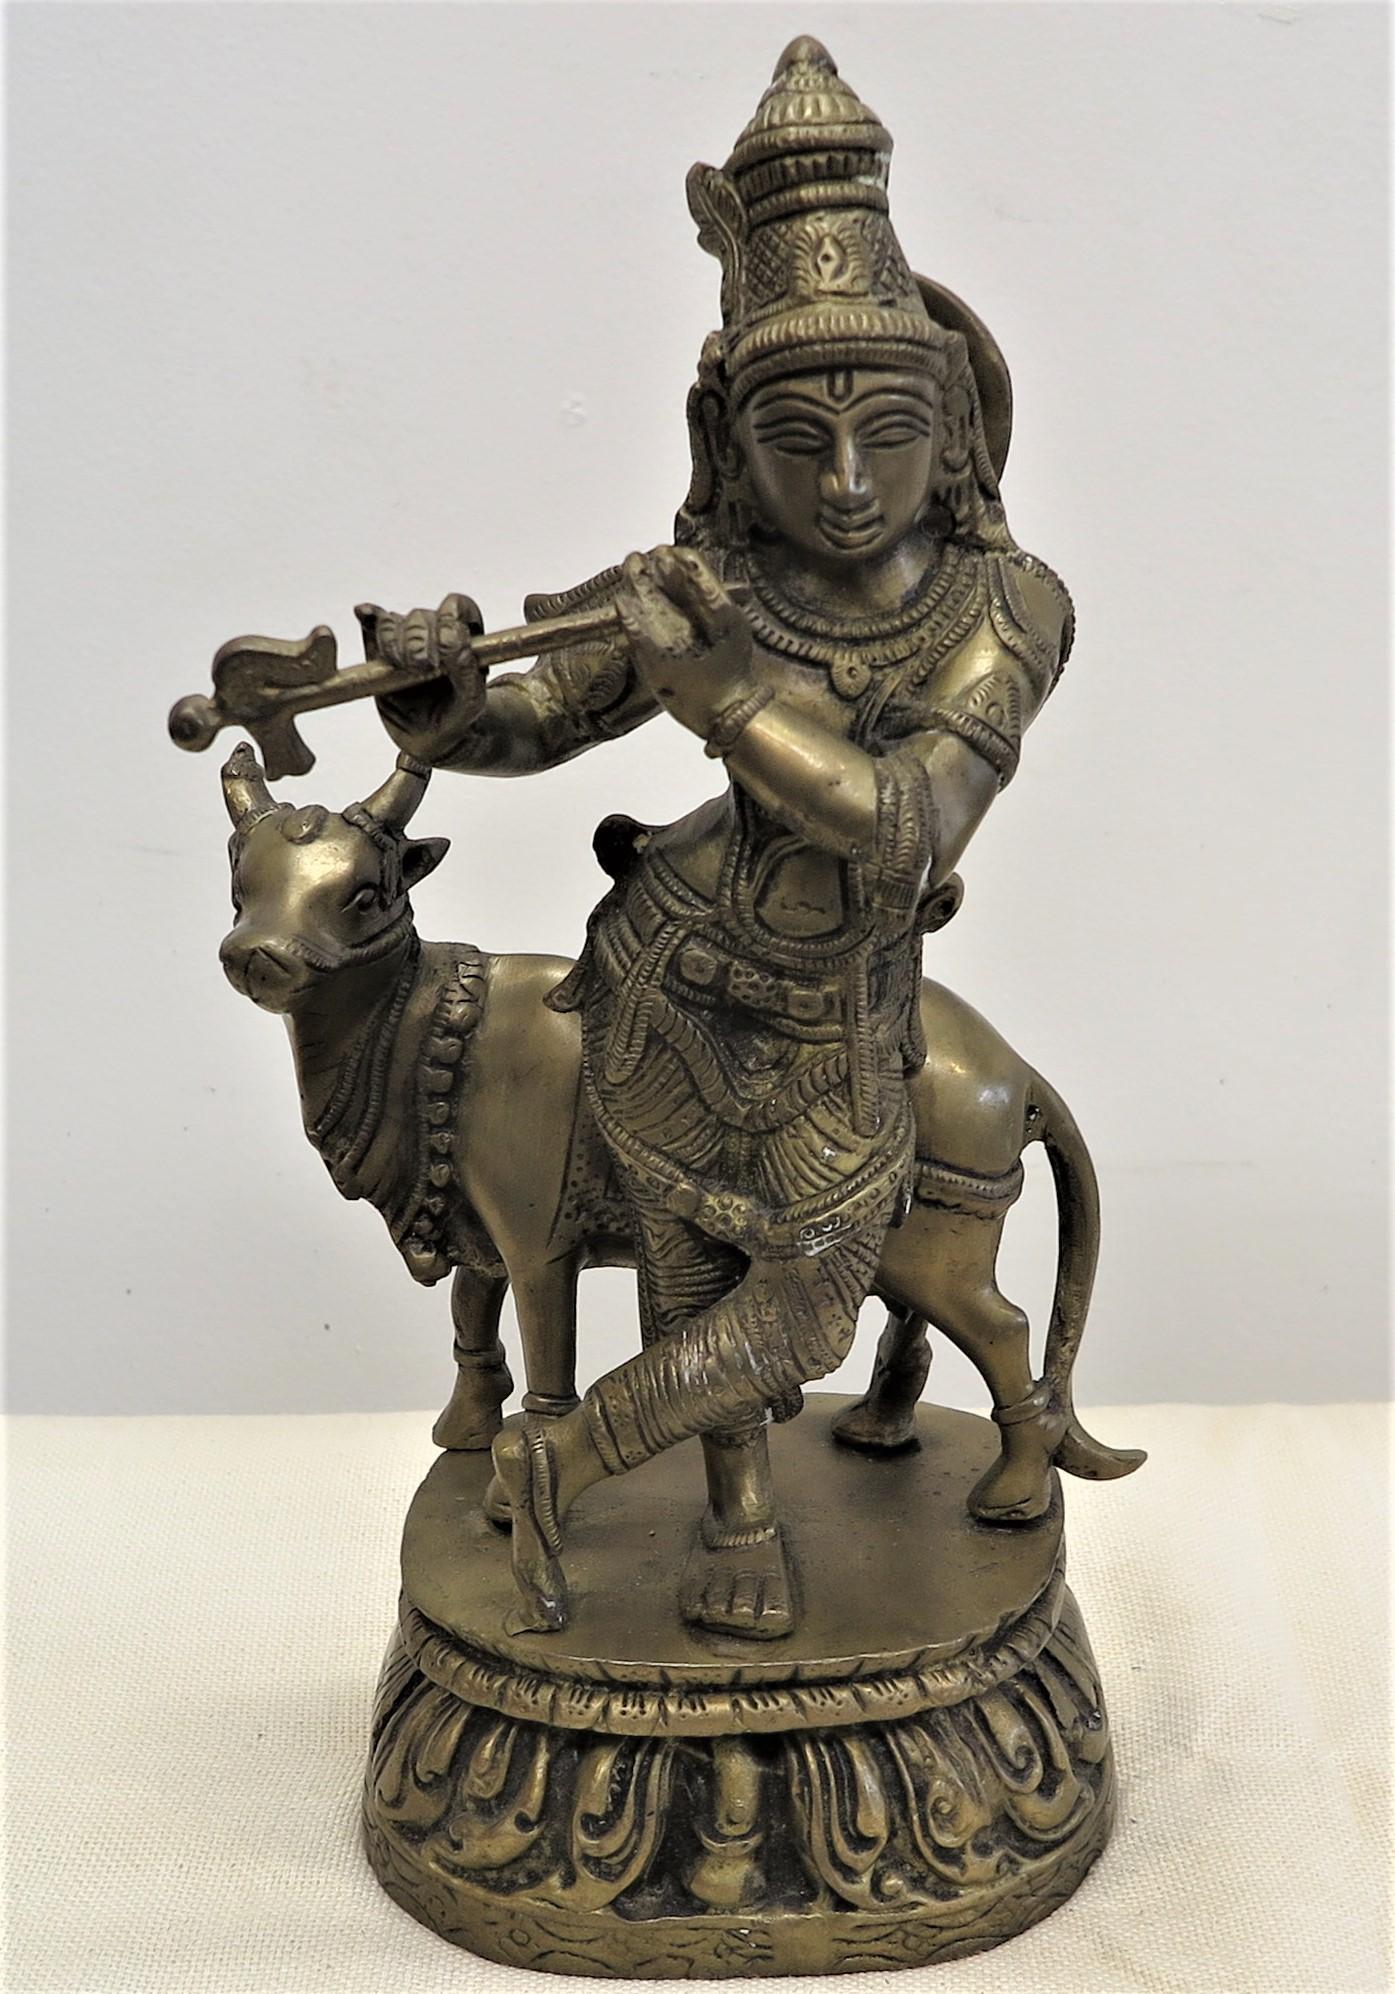 Merveilleuse statue en laiton de Krishna avec Nandi. Statue de Krishna et Nandi en laiton, faite à la main selon la technique de la cire perdue. La monture de Krishna est Nandi. Nandi, la vache, représente la félicité divine, la joie, le plaisir, la